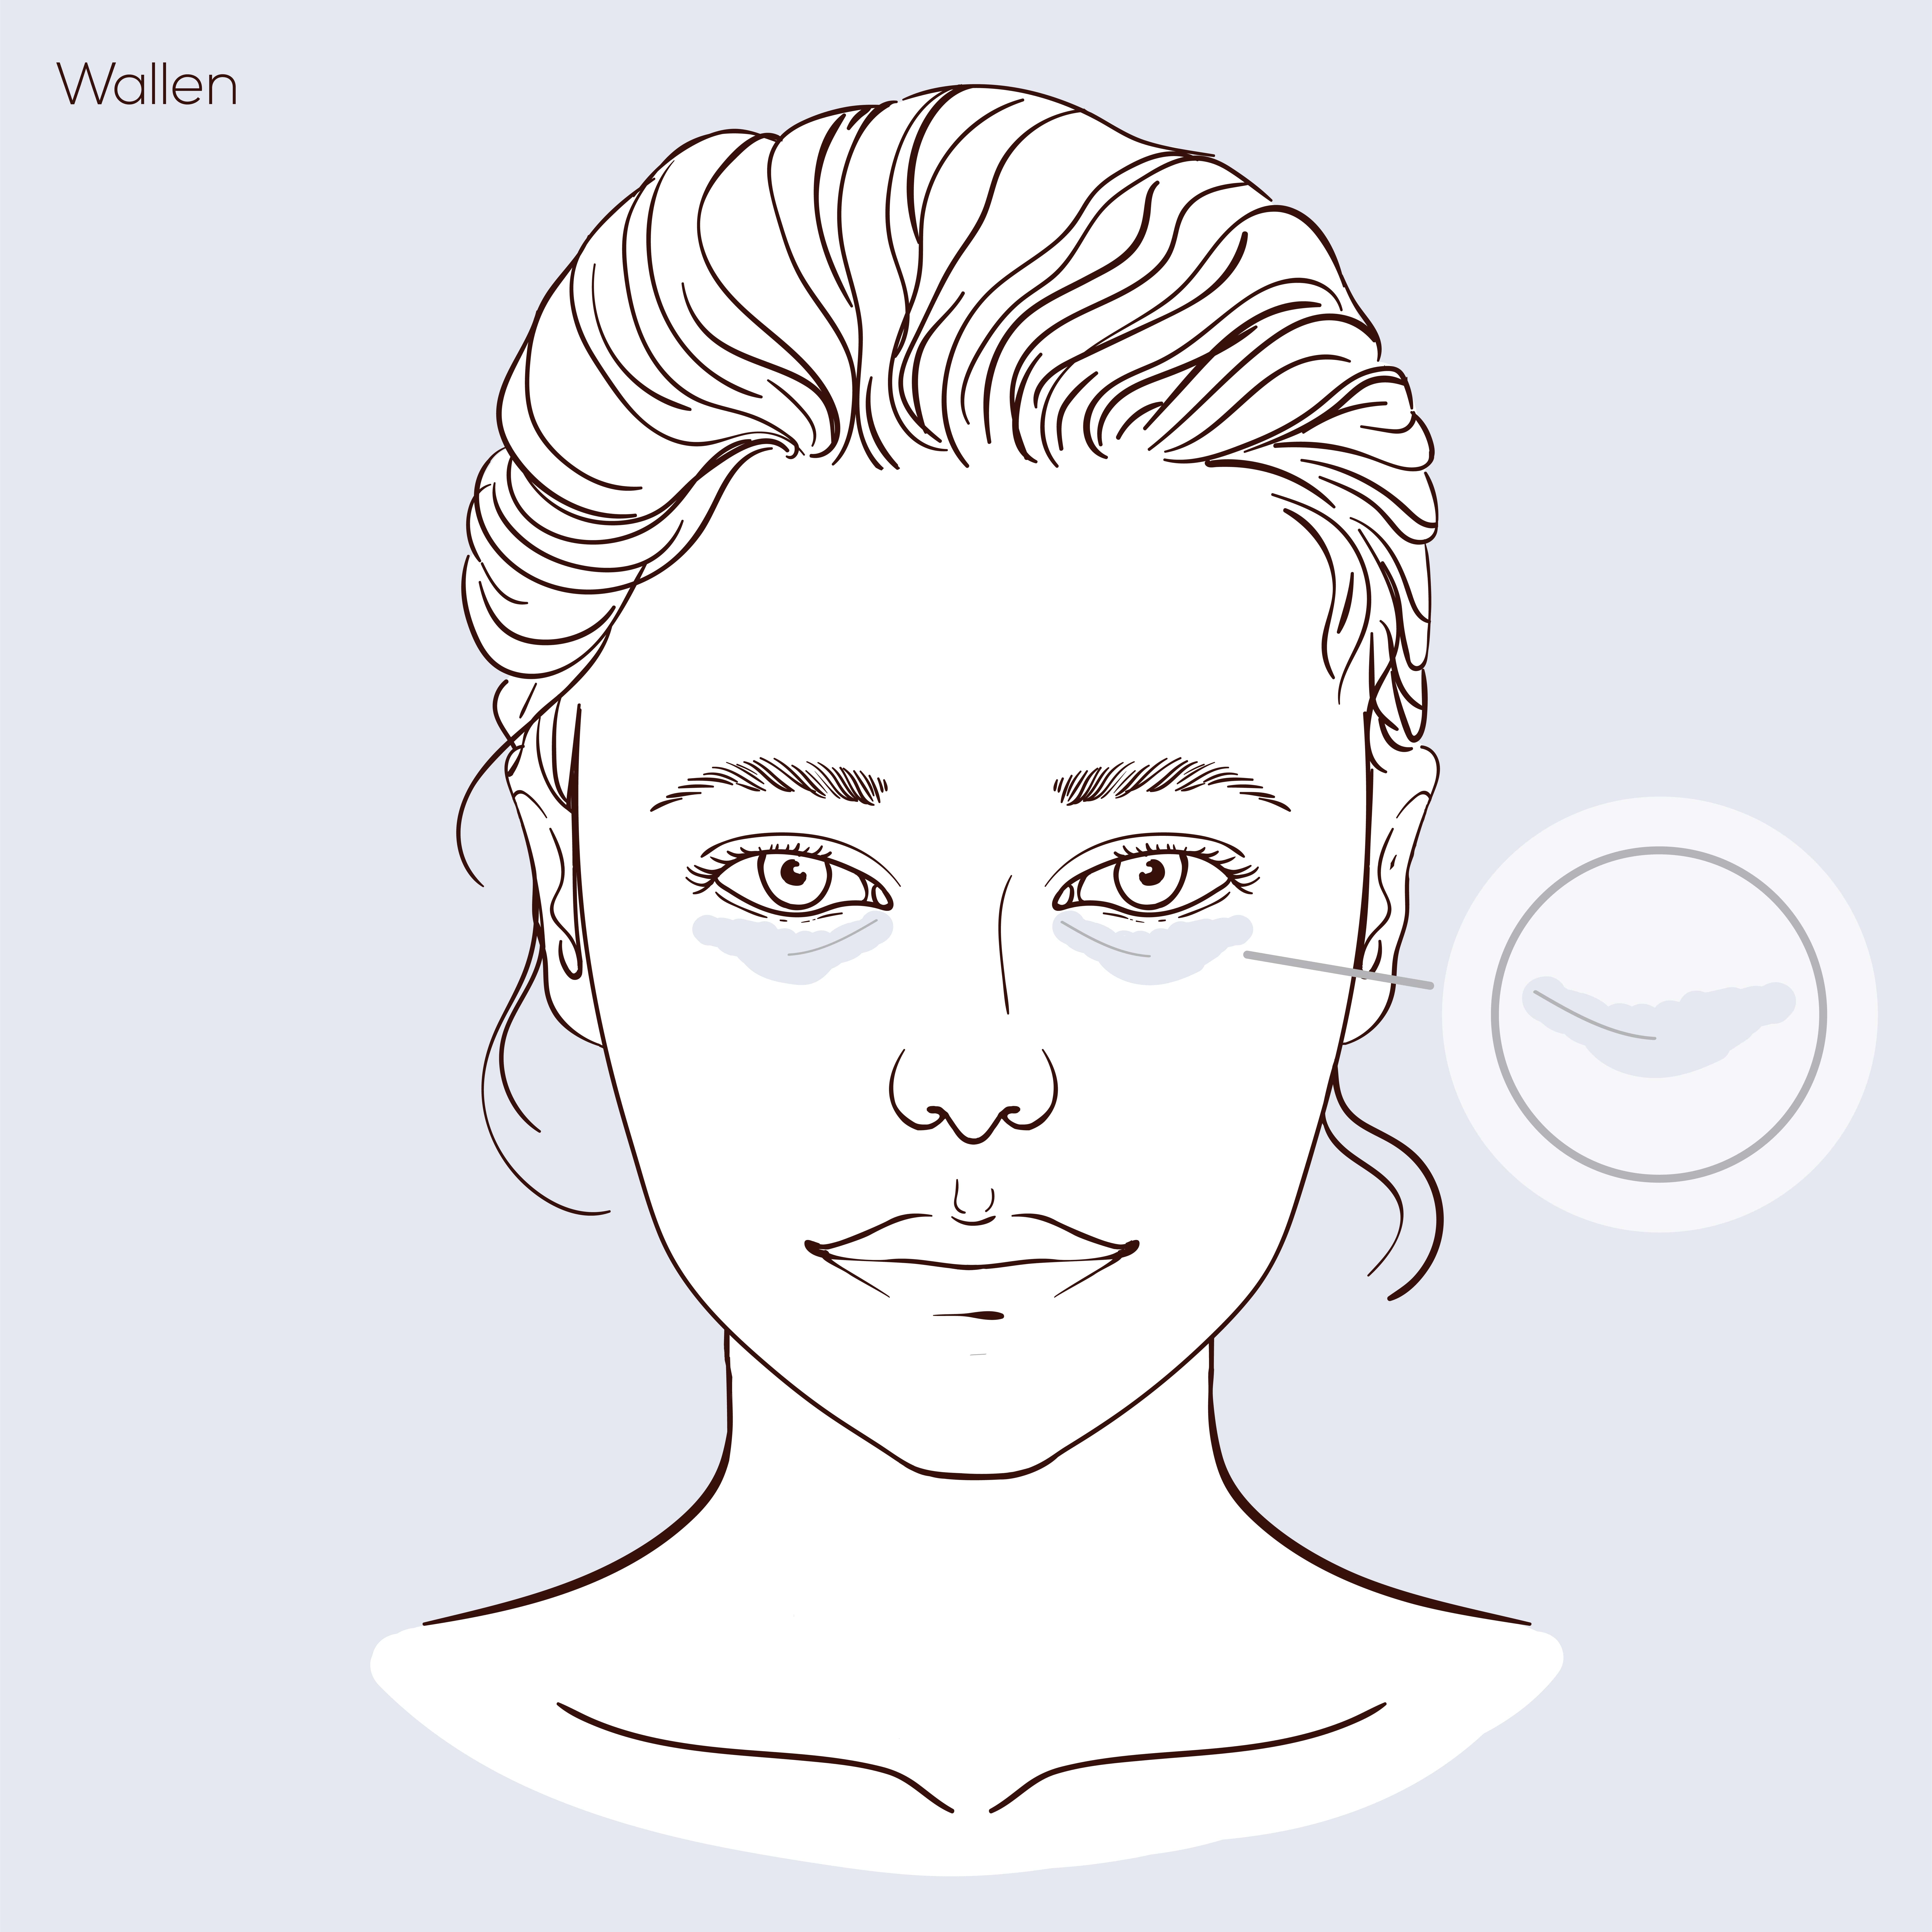 Illustratie van gezicht met huidprobleem wallen